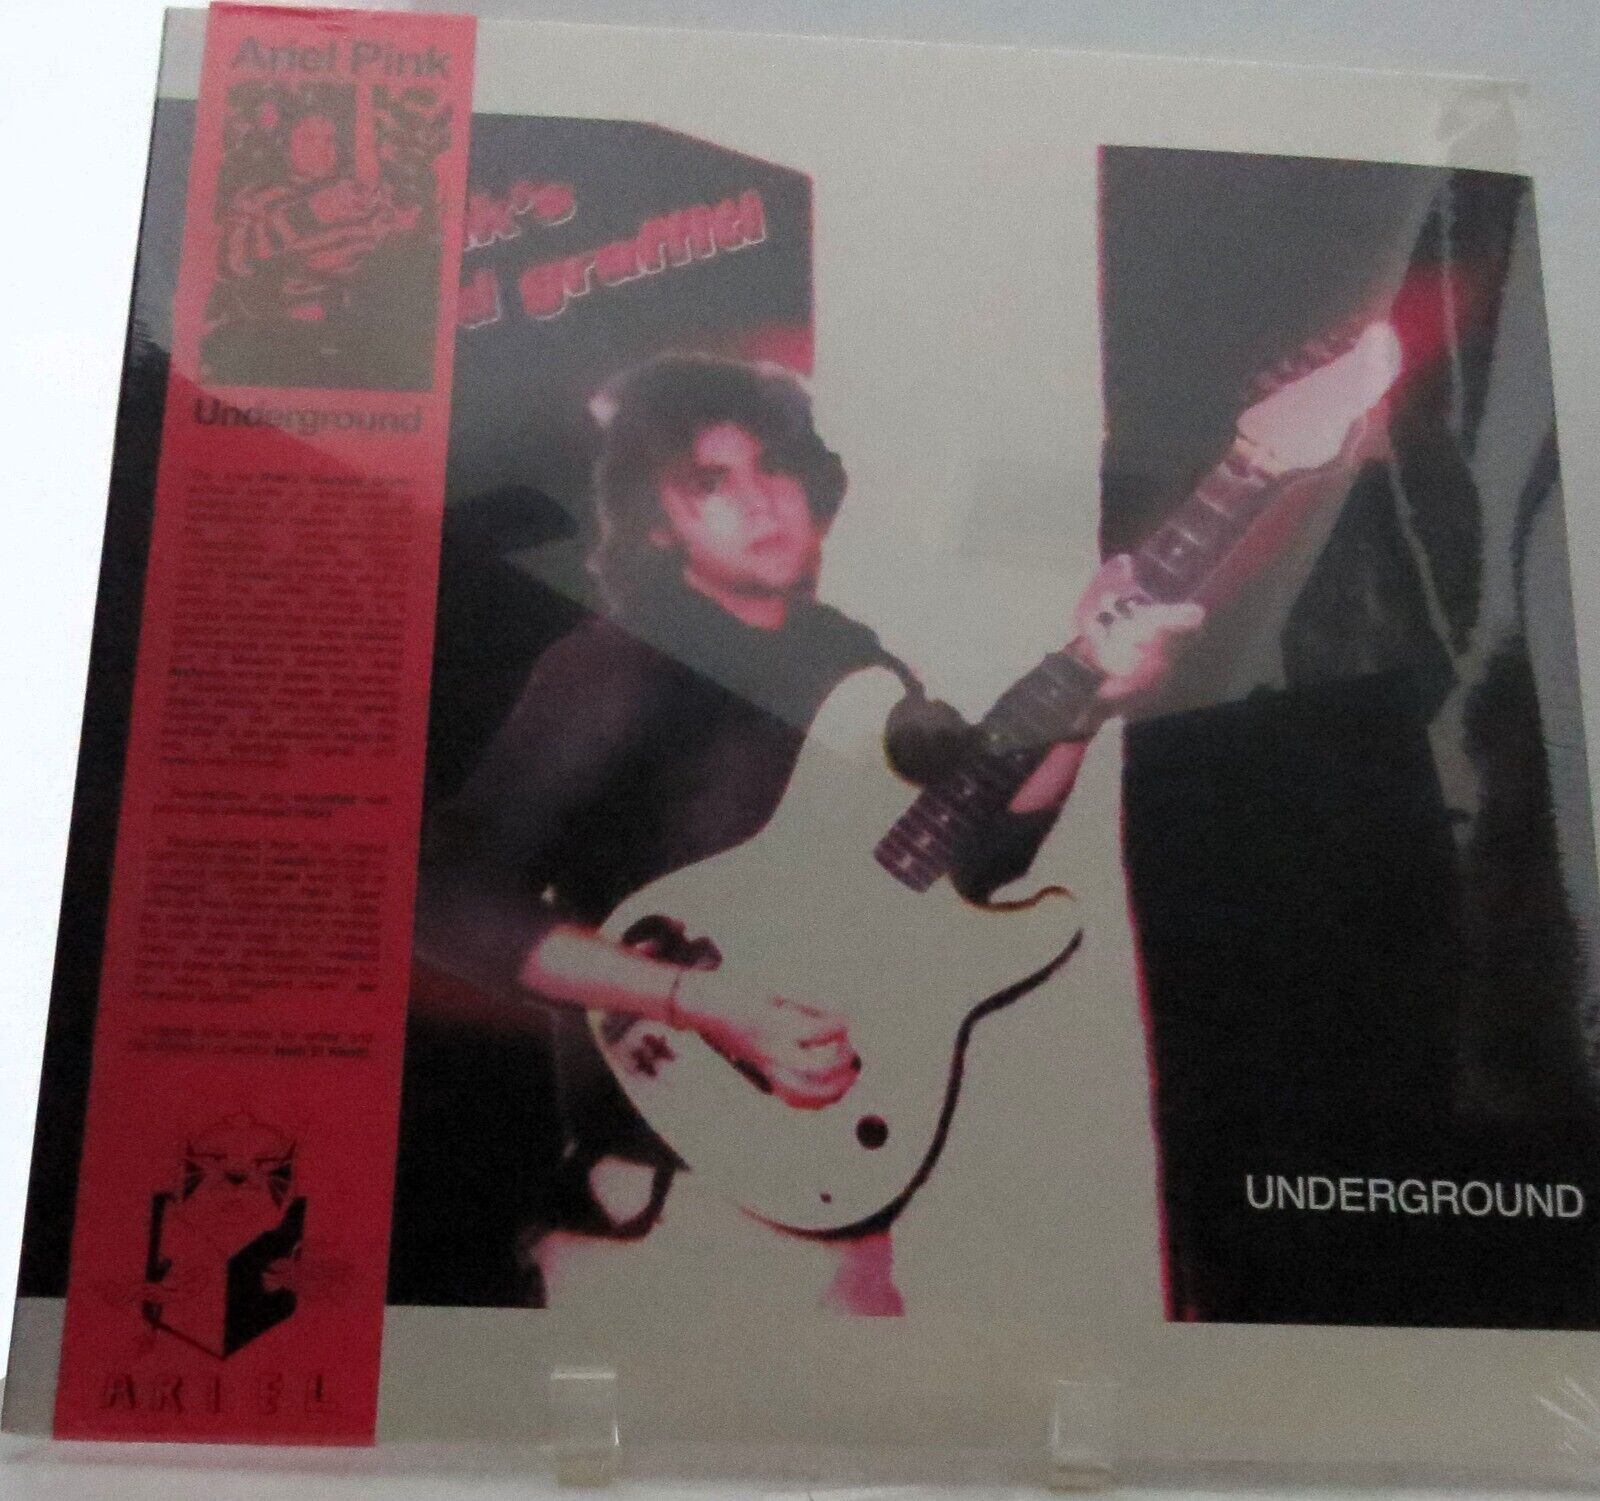 Underground by Ariel Pink (Record, 2019)